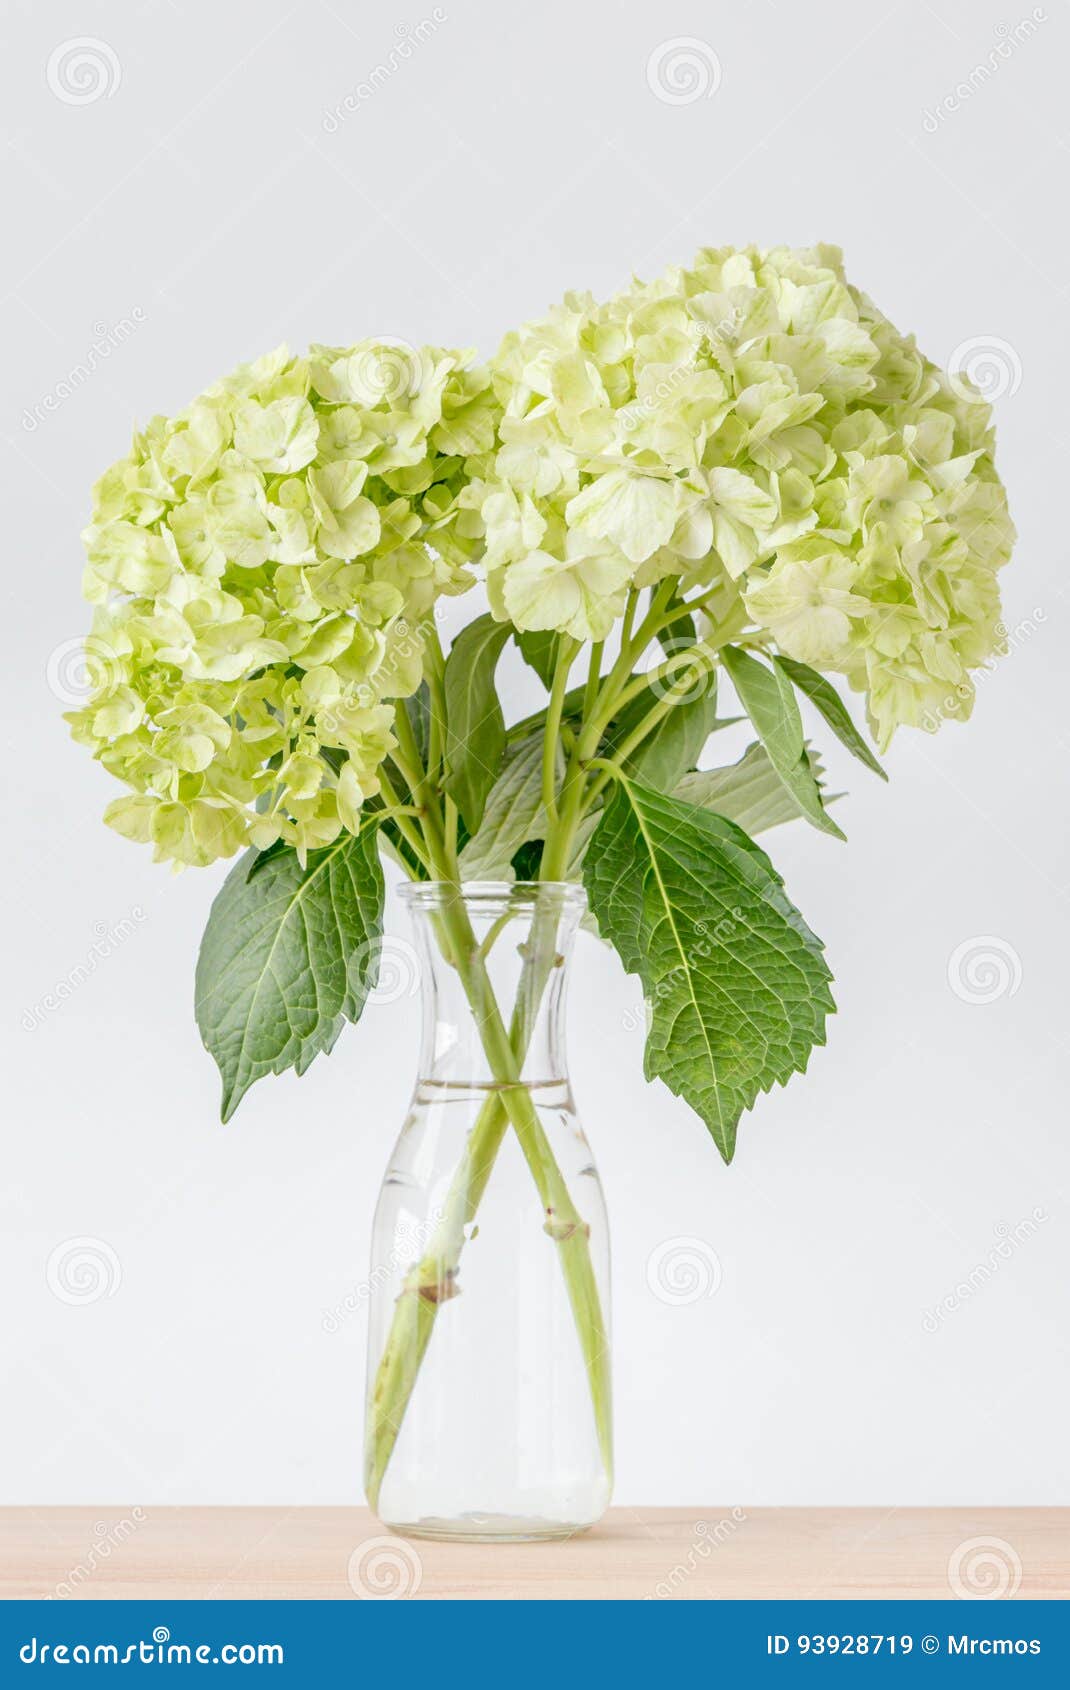 Las Flores Verdes Hermosas De La Hortensia Adornadas En Lugar Del Florero  Encendido Cortejan Imagen de archivo - Imagen de verano, casero: 93928719